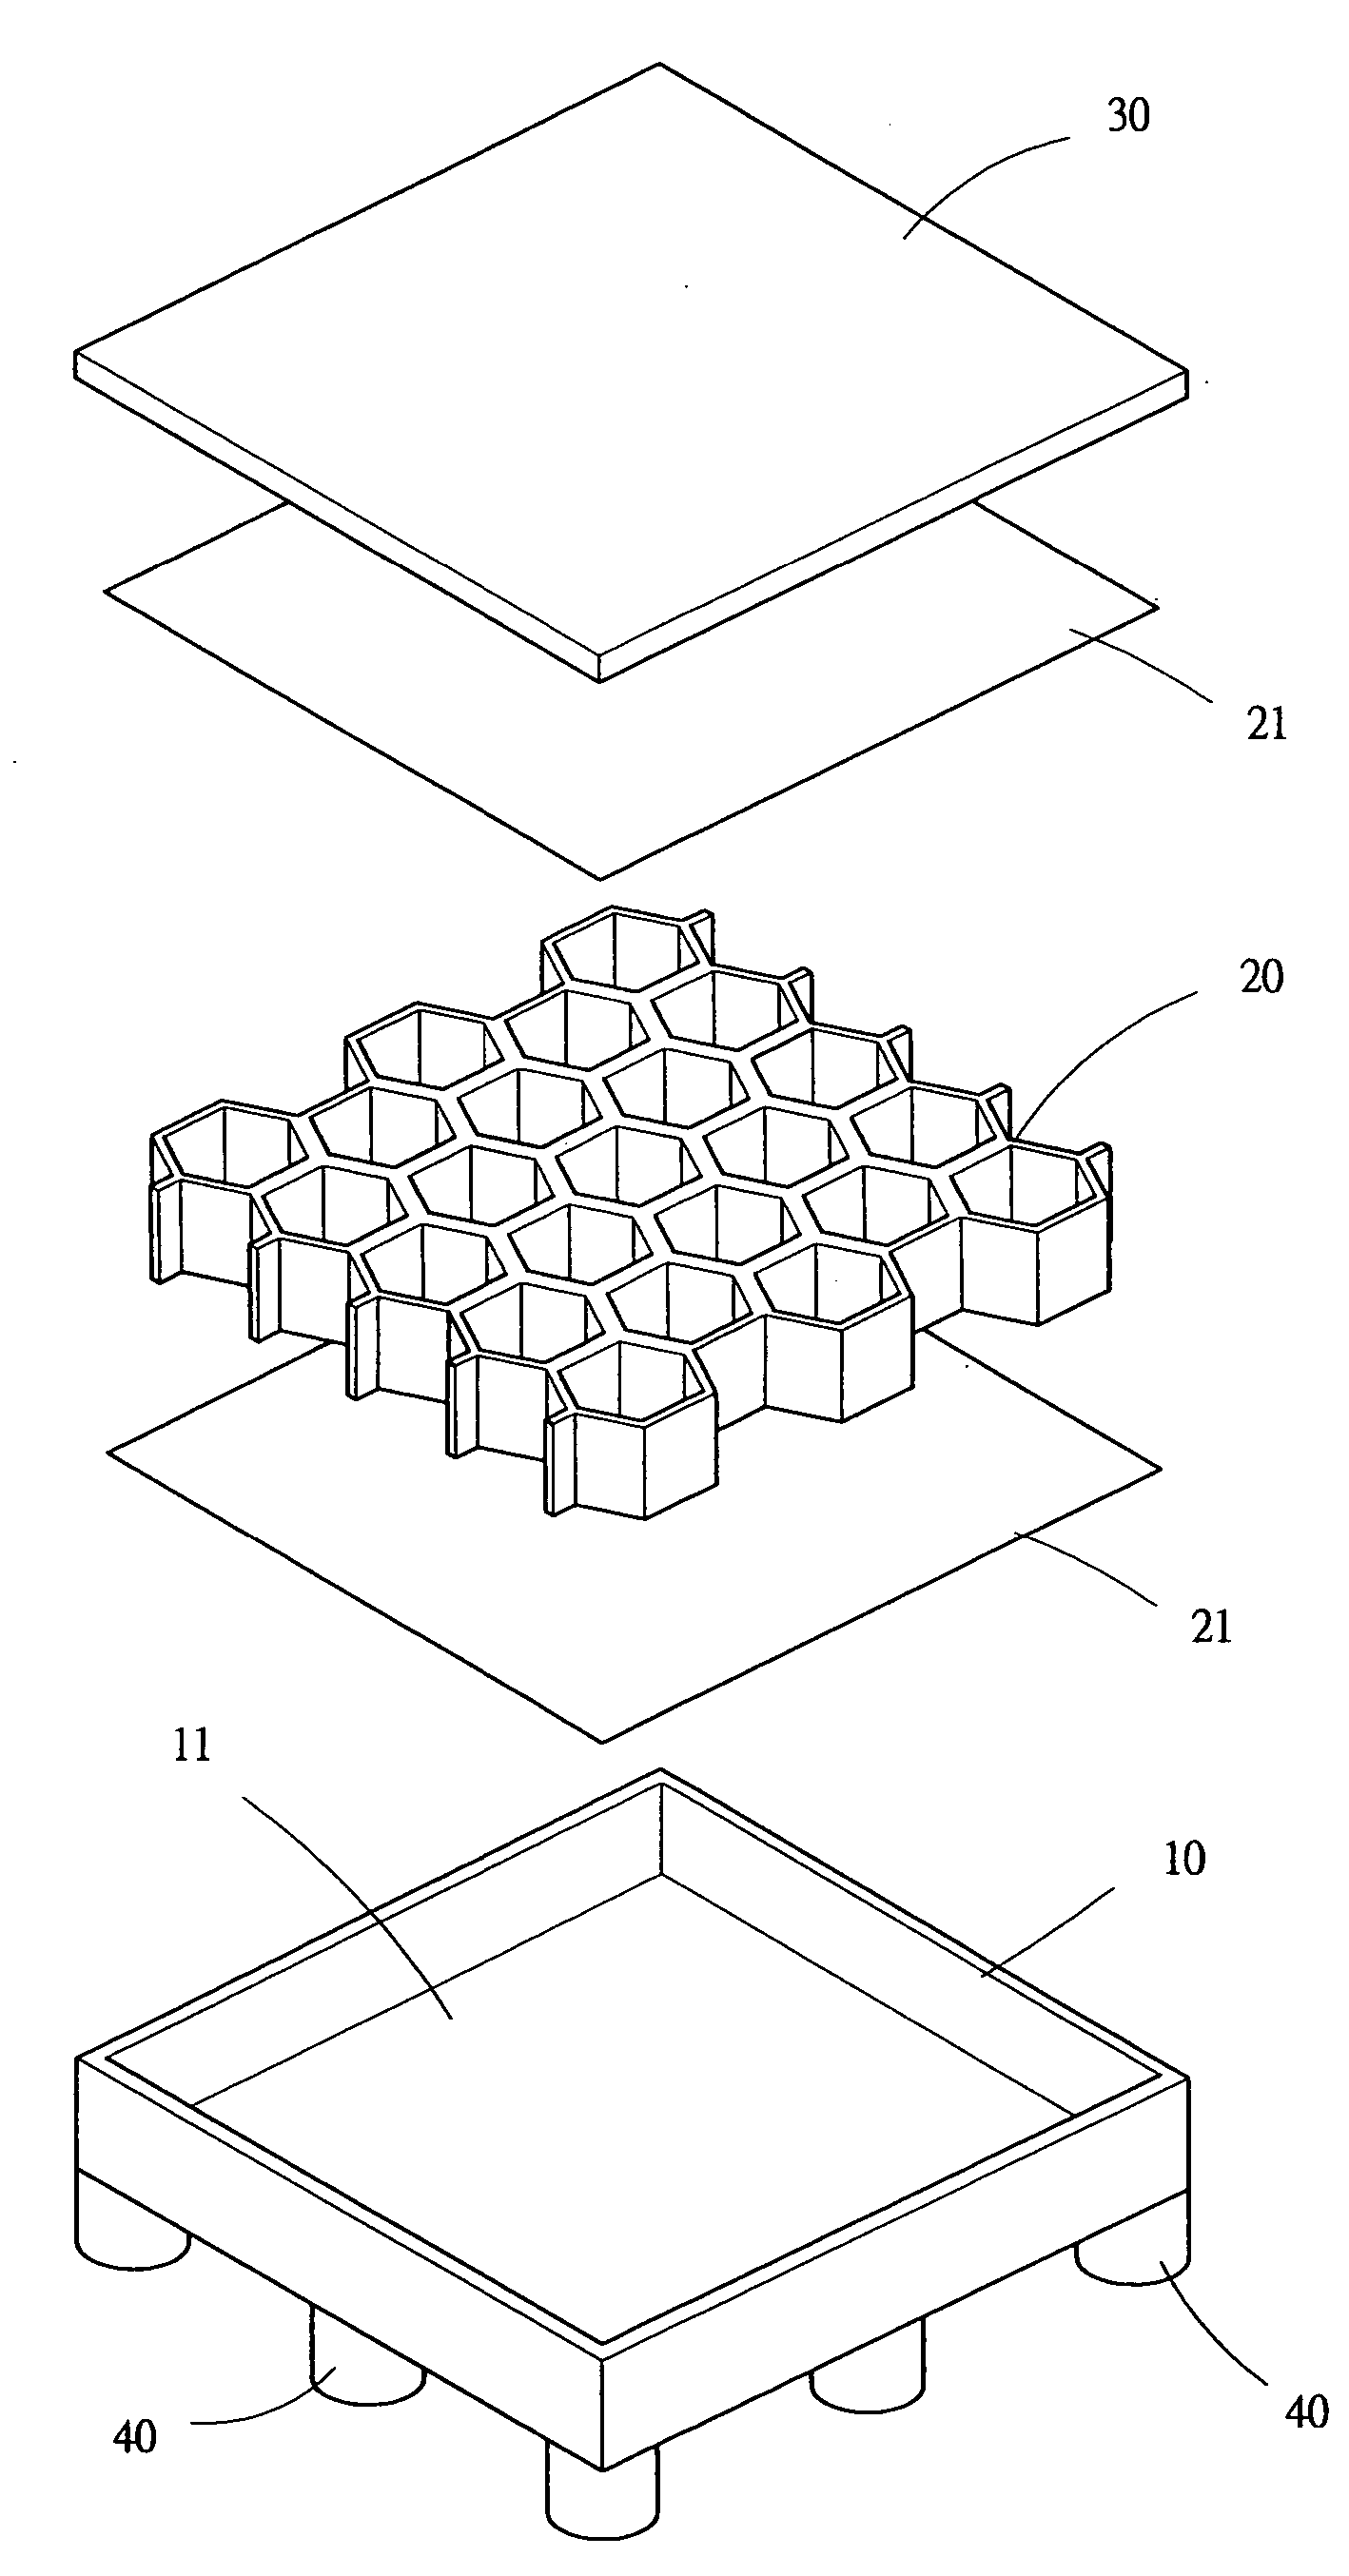 Pallet structure